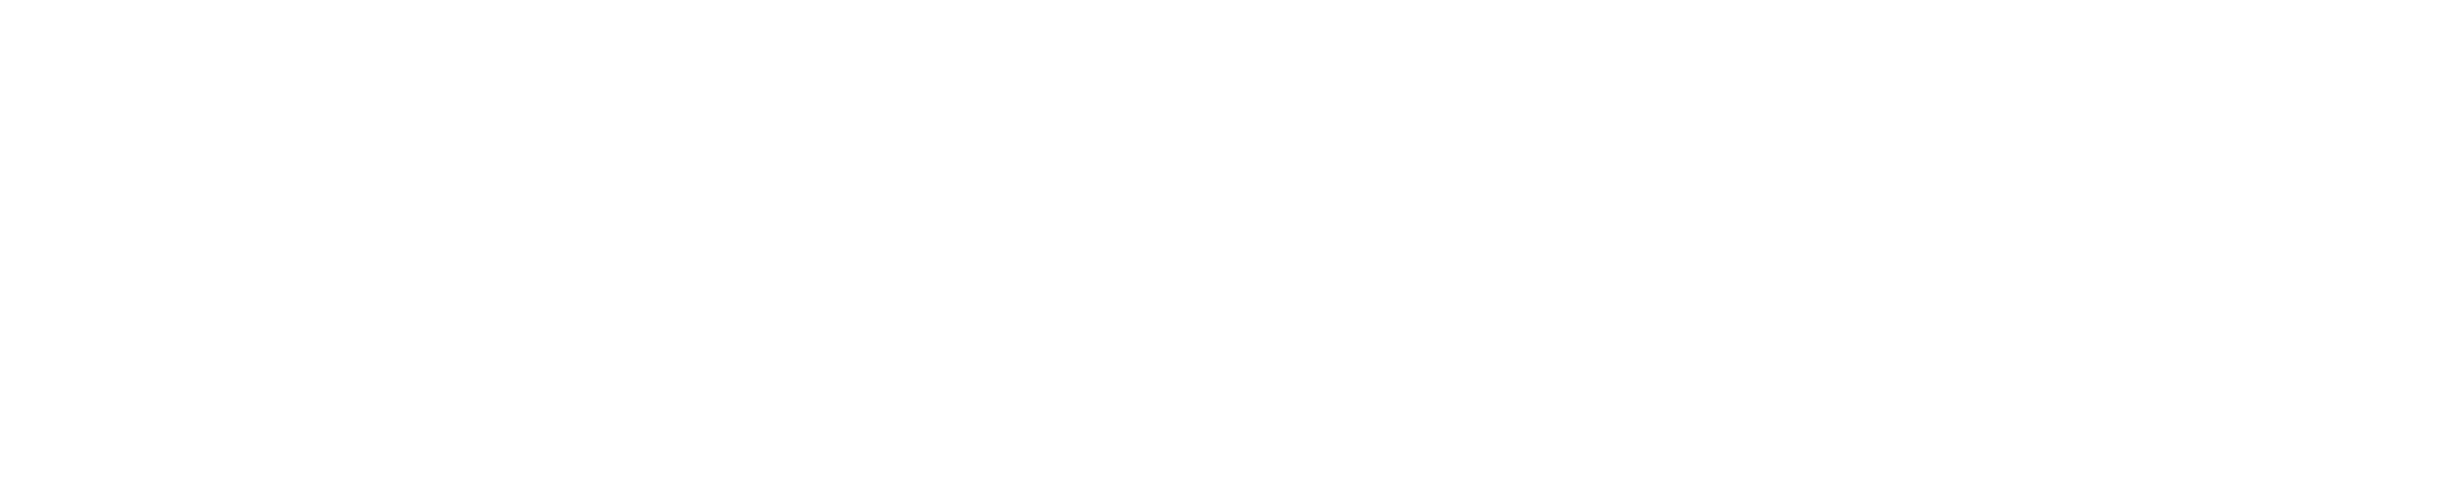 Imagen de Sony logo PNG